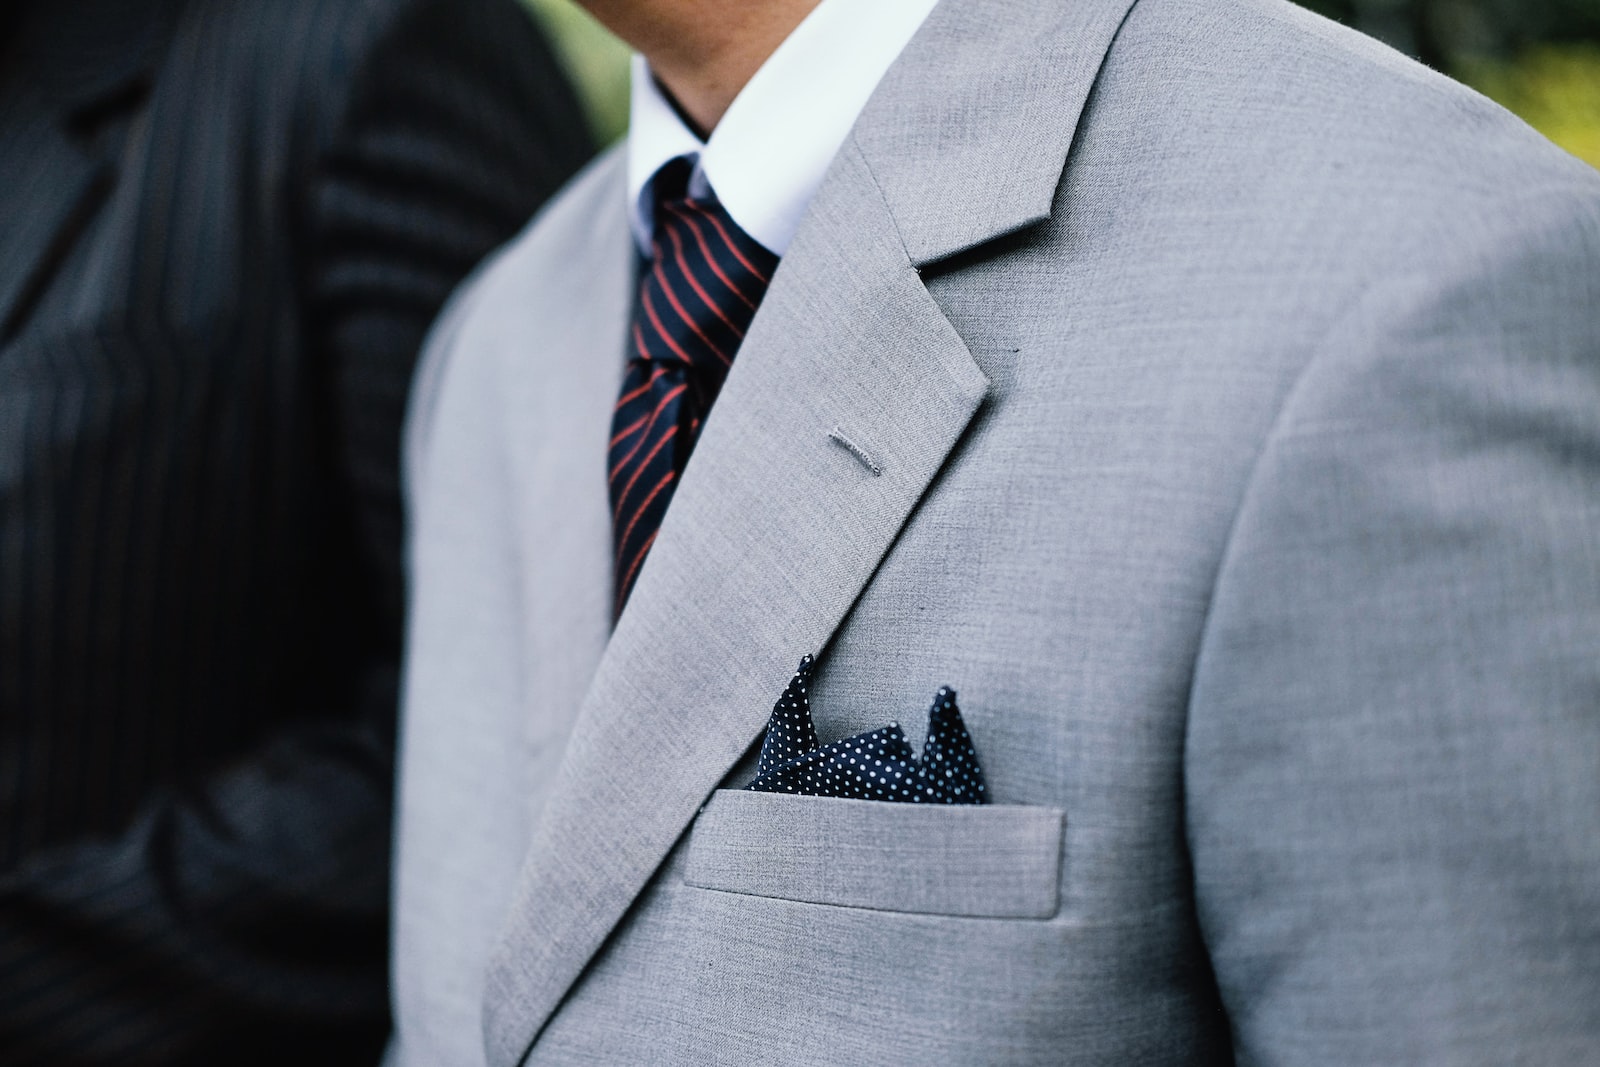 handkerchief in the suit pocket